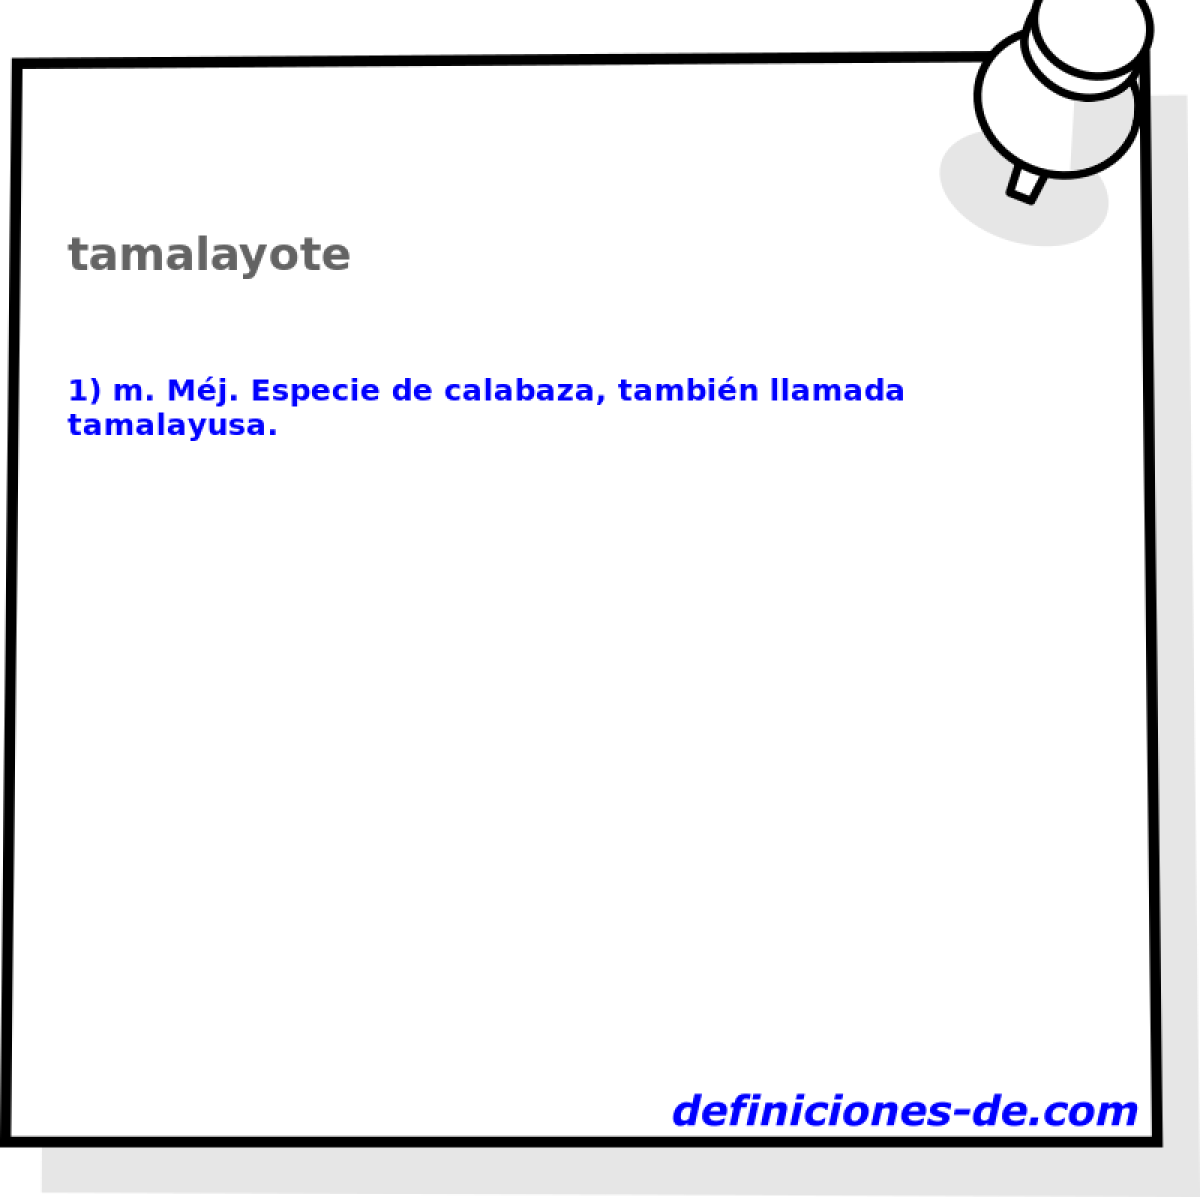 tamalayote 